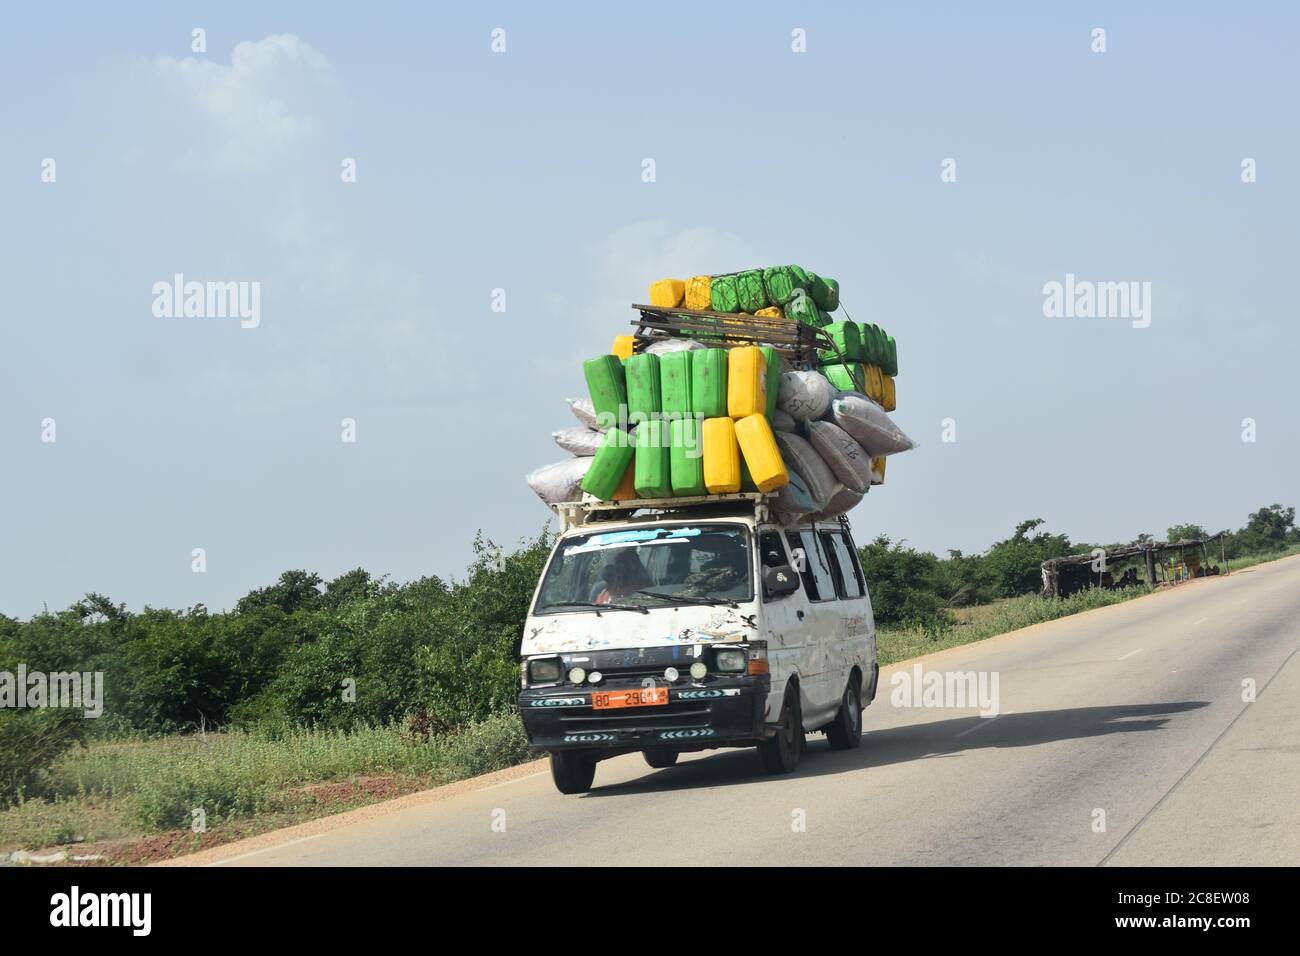 Ein überladener Passagiertransporter, der mit Gepäck überhäuft ist, fährt auf einer Autobahn im ländlichen Niger, Afrika Stockfoto